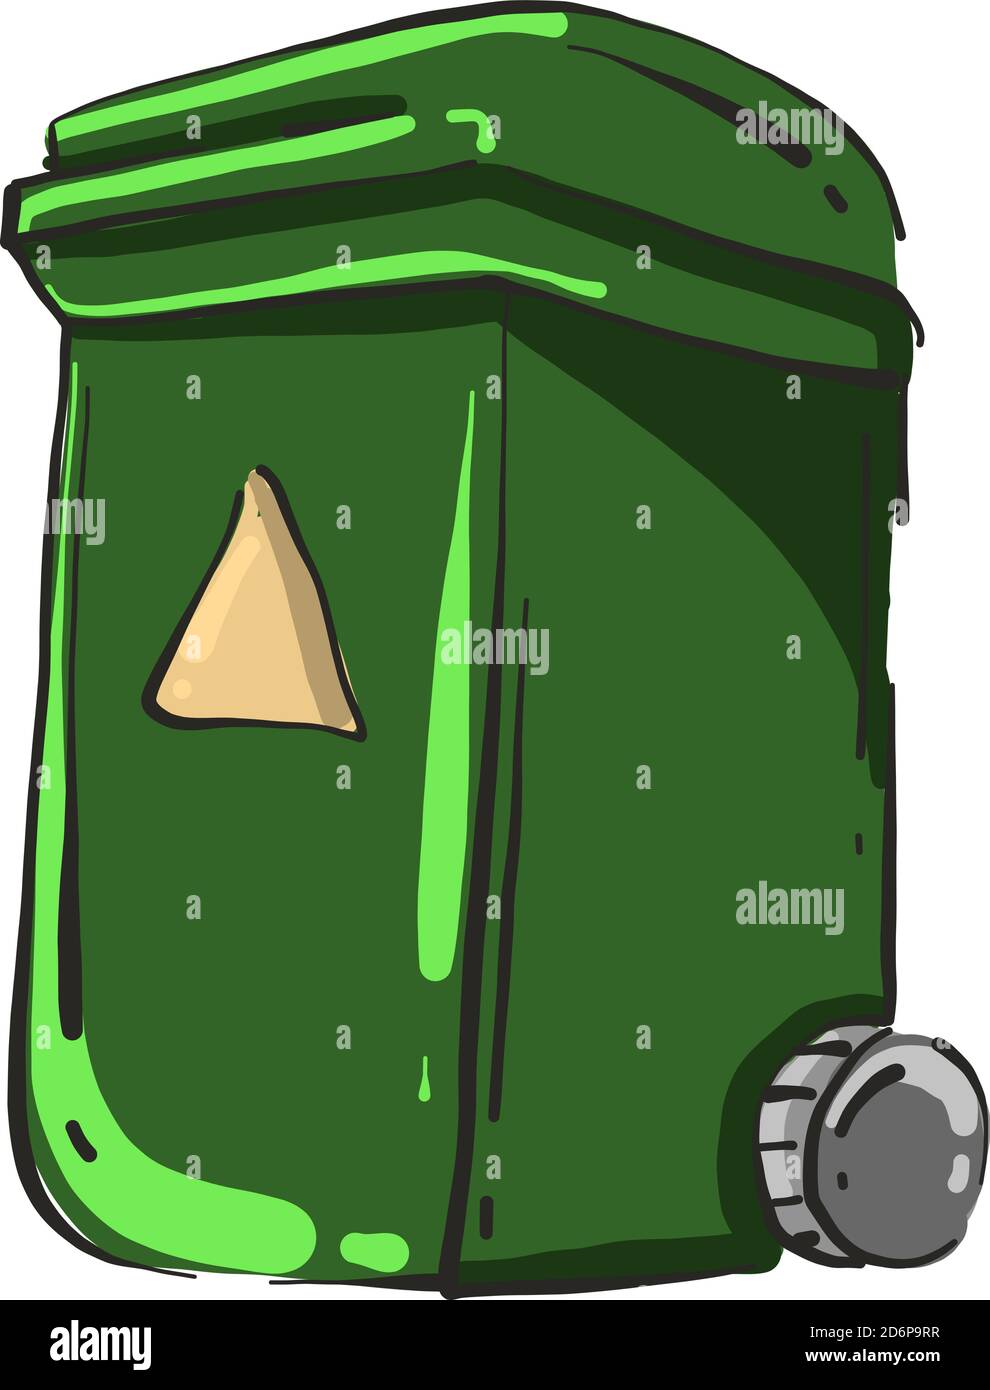 Green bin, illustration, vector on white background. Stock Vector